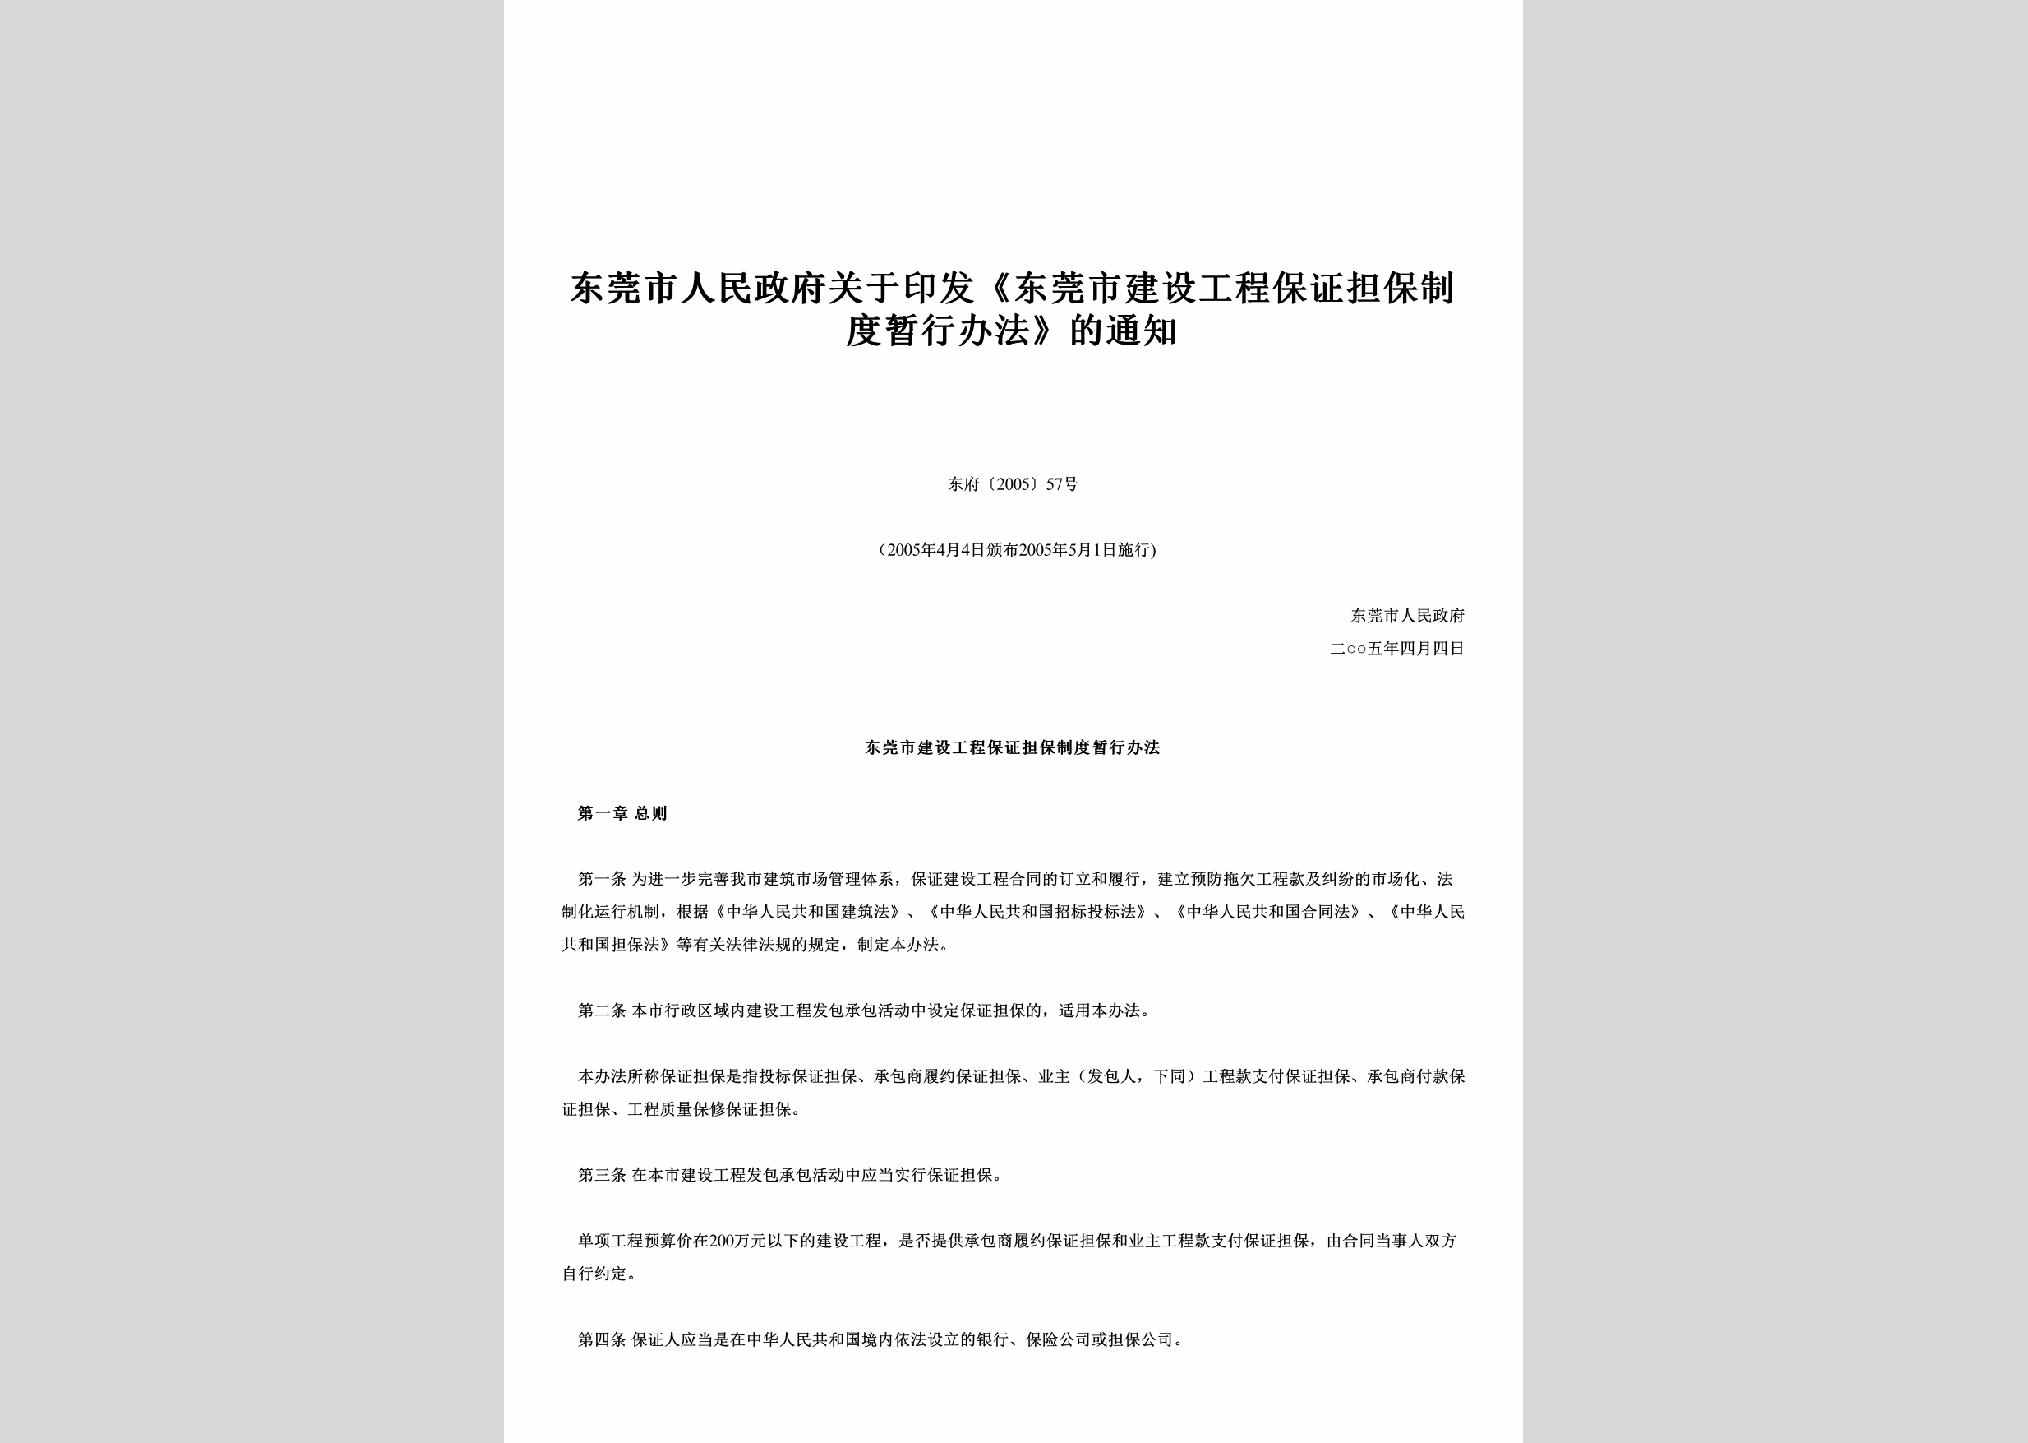 东府[2005]57号：关于印发《东莞市建设工程保证担保制度暂行办法》的通知